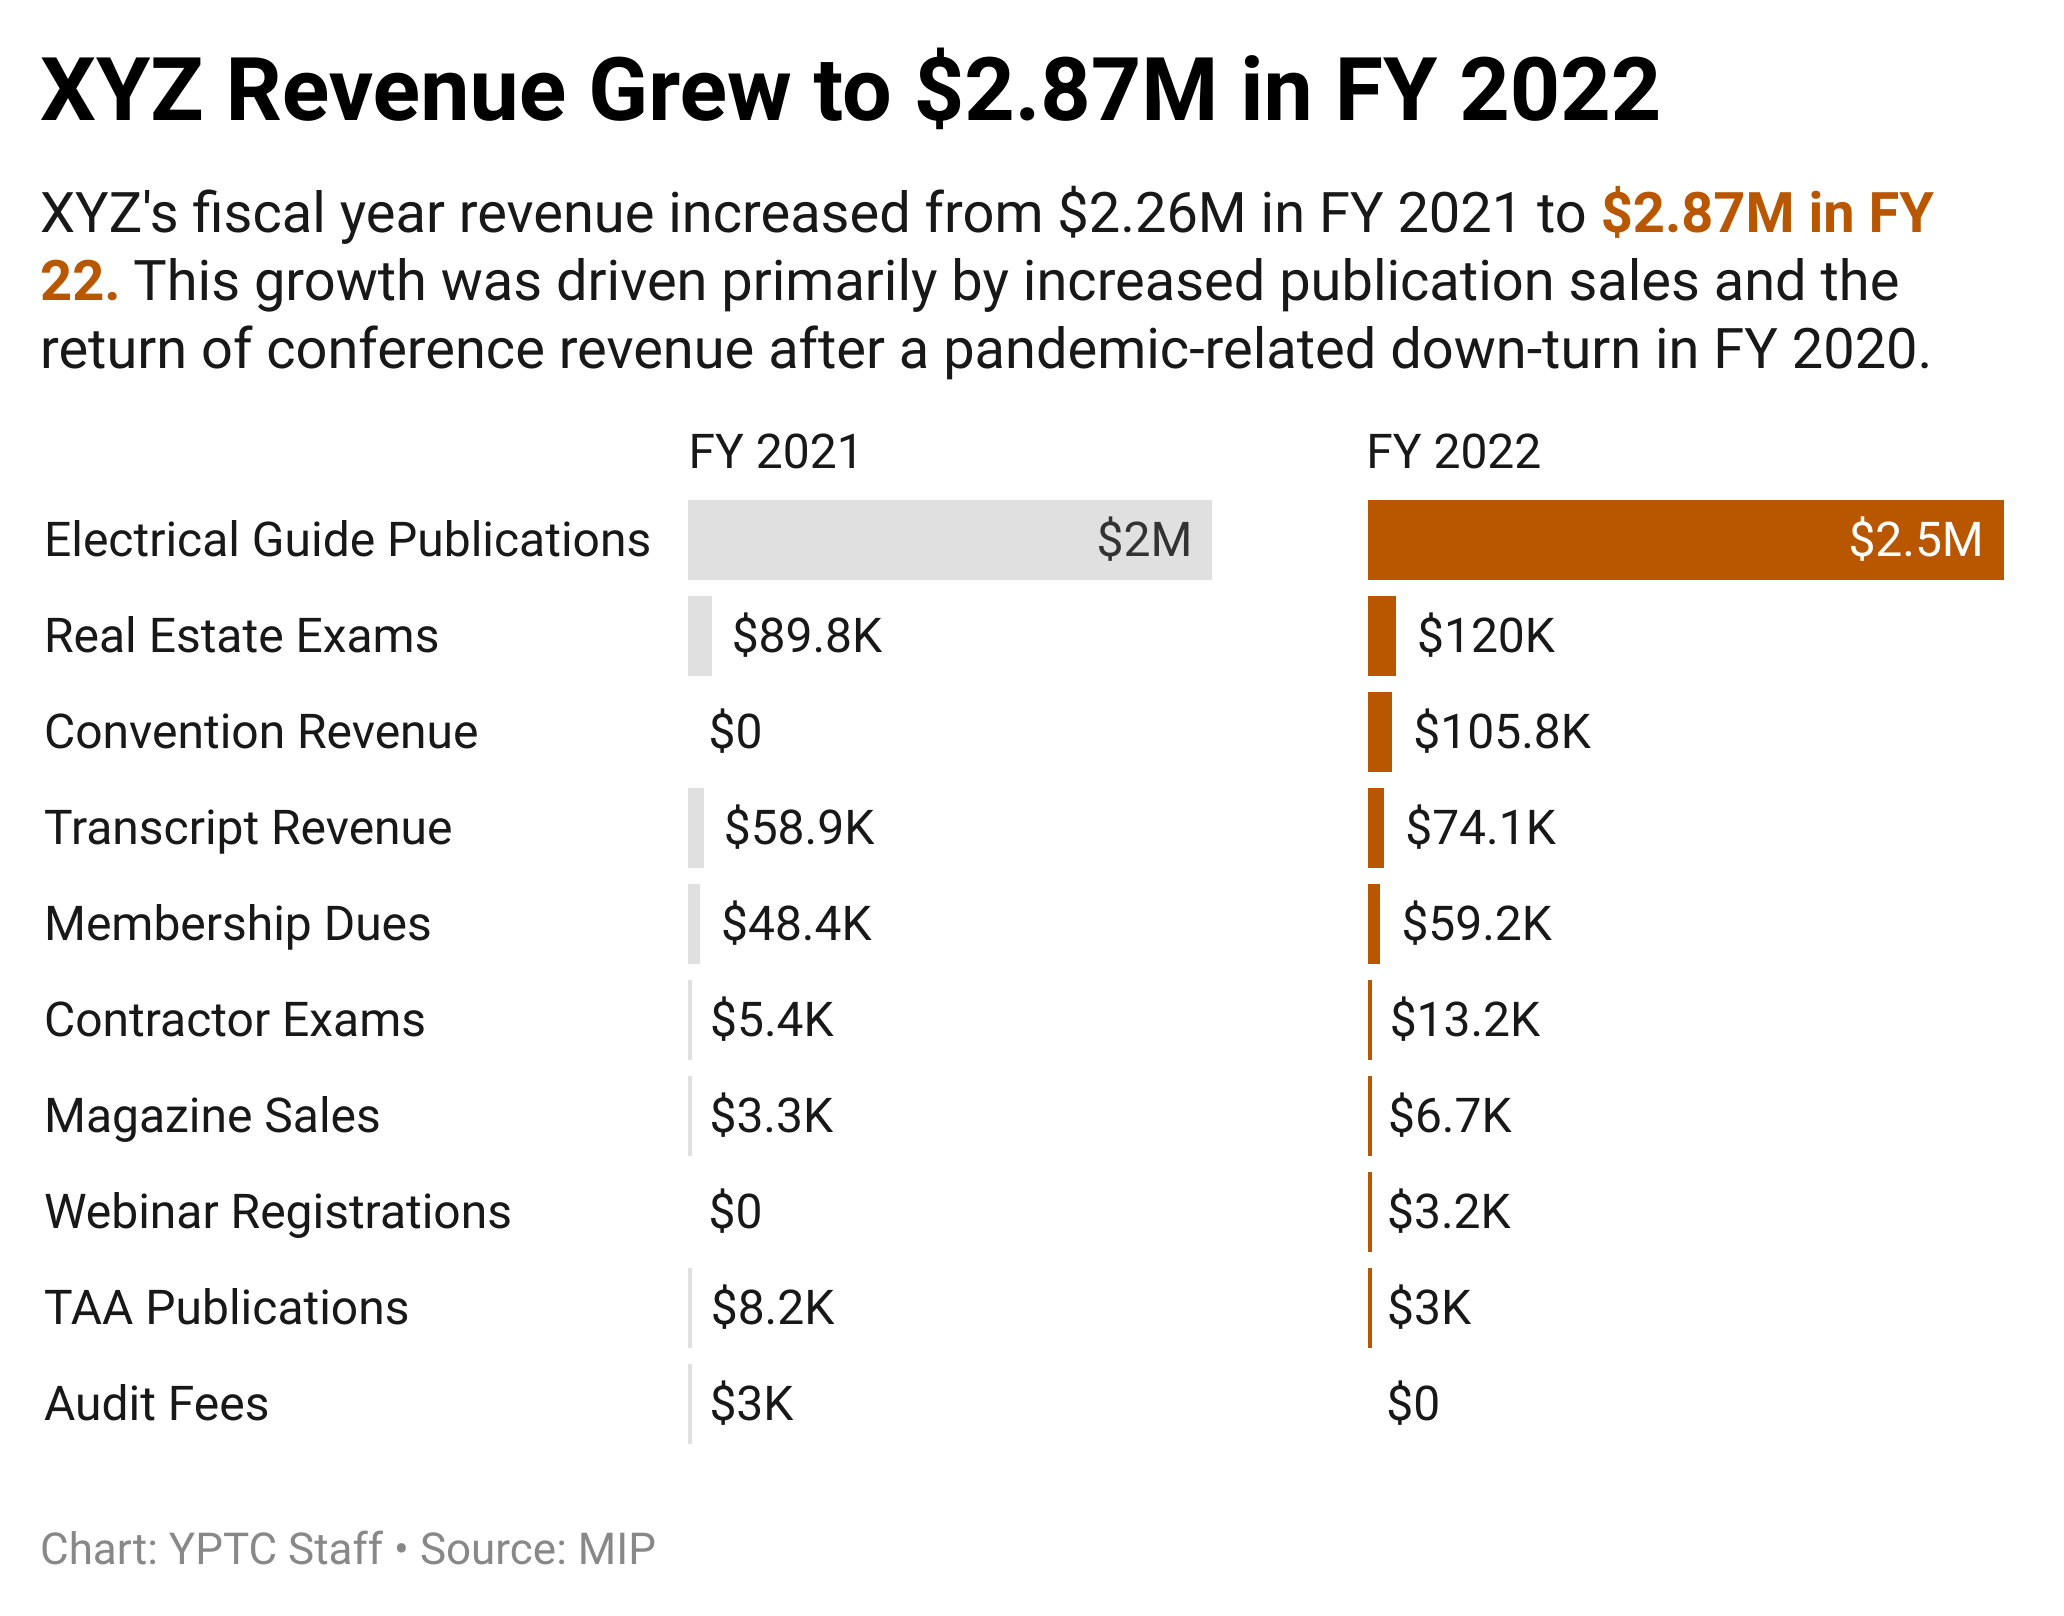 KWRLQ-xyz-revenue-grew-to-2-87m-in-fy-2022